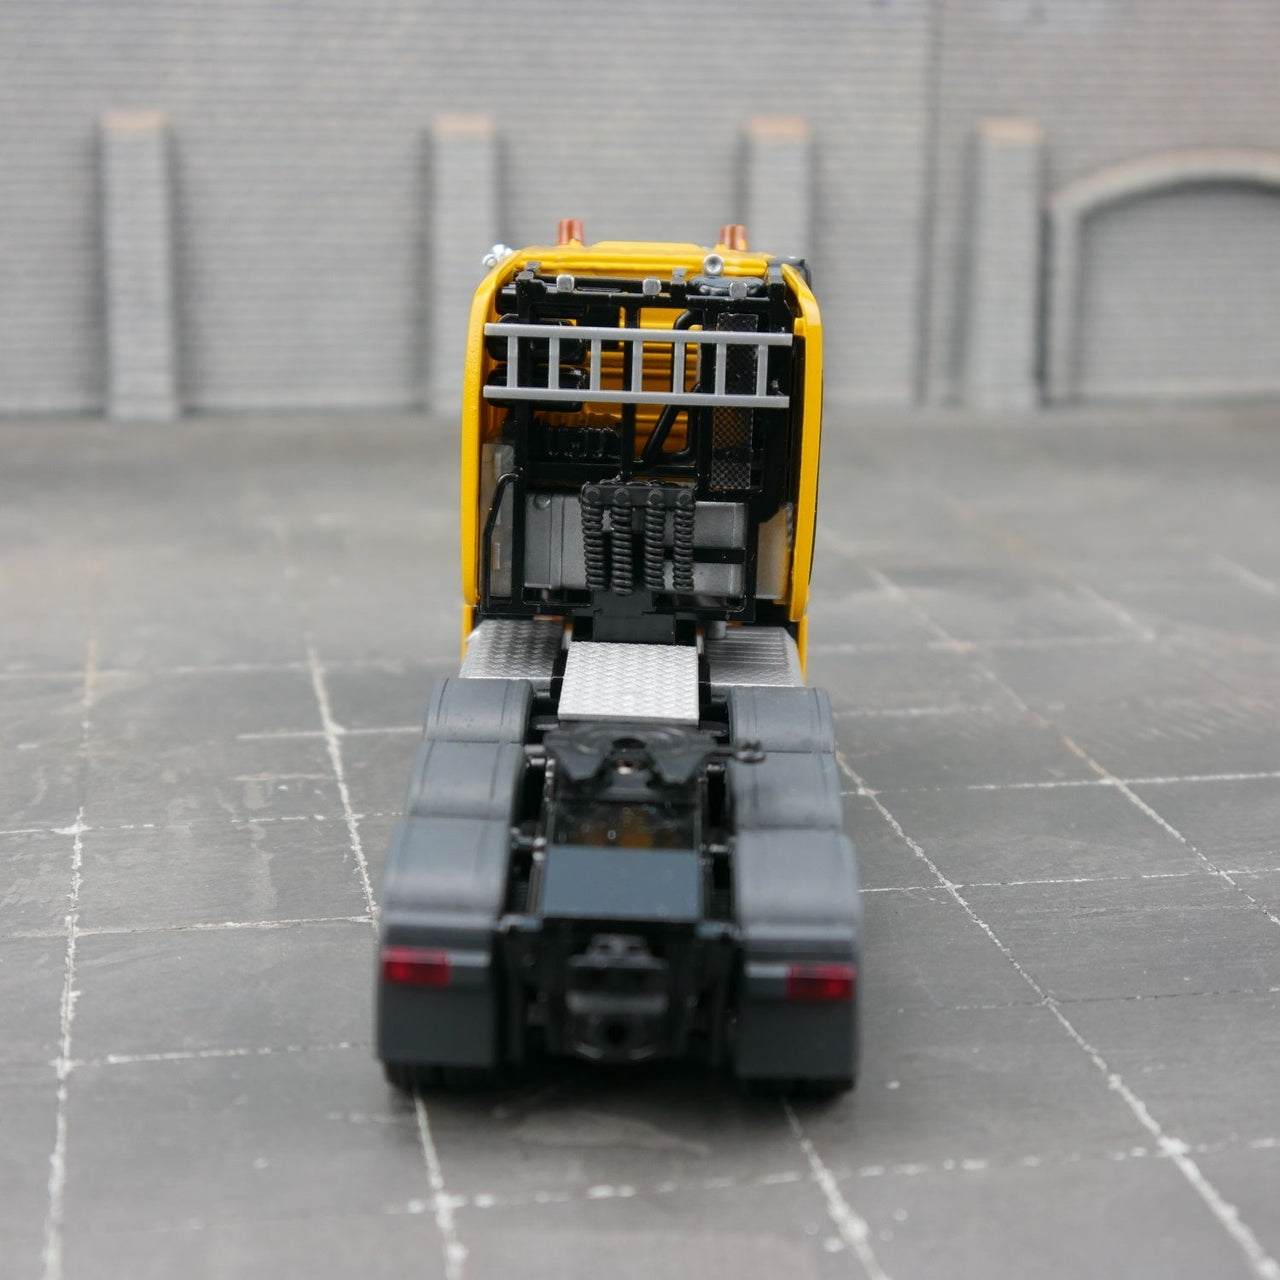 78001 ट्रैक्टर ट्रक मर्सिडीज-बेंज एरोक्स स्ट्रीम स्पेस स्केल 1:50 (पूर्व बिक्री)